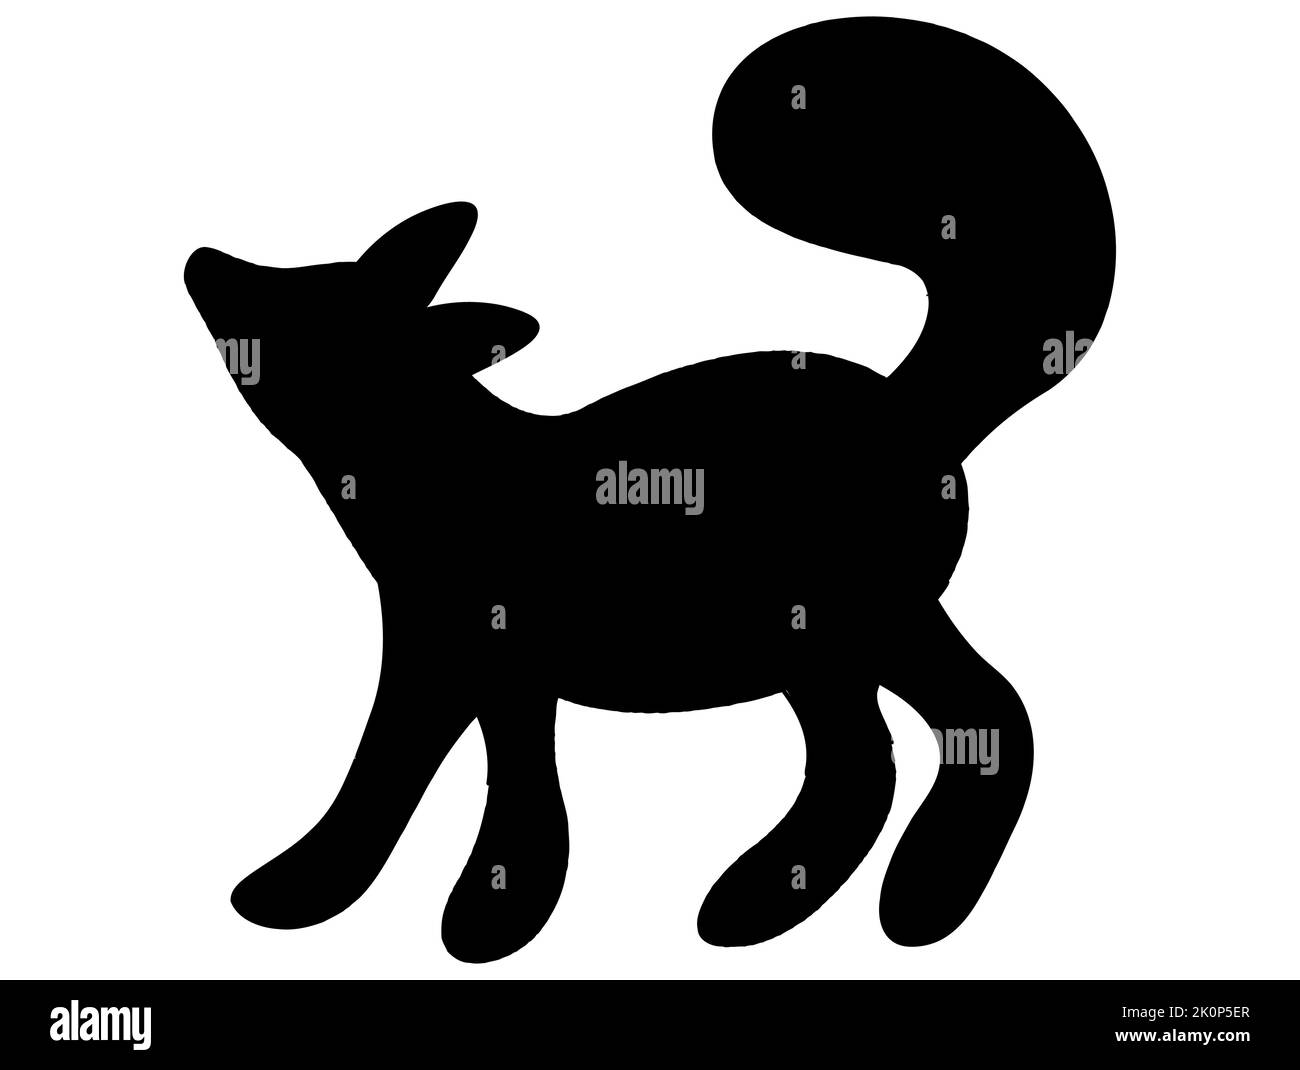 Icône de renard noir et blanc isolée par vecteur. Concept de logo créatif, mignon et caricatural Illustration de Vecteur